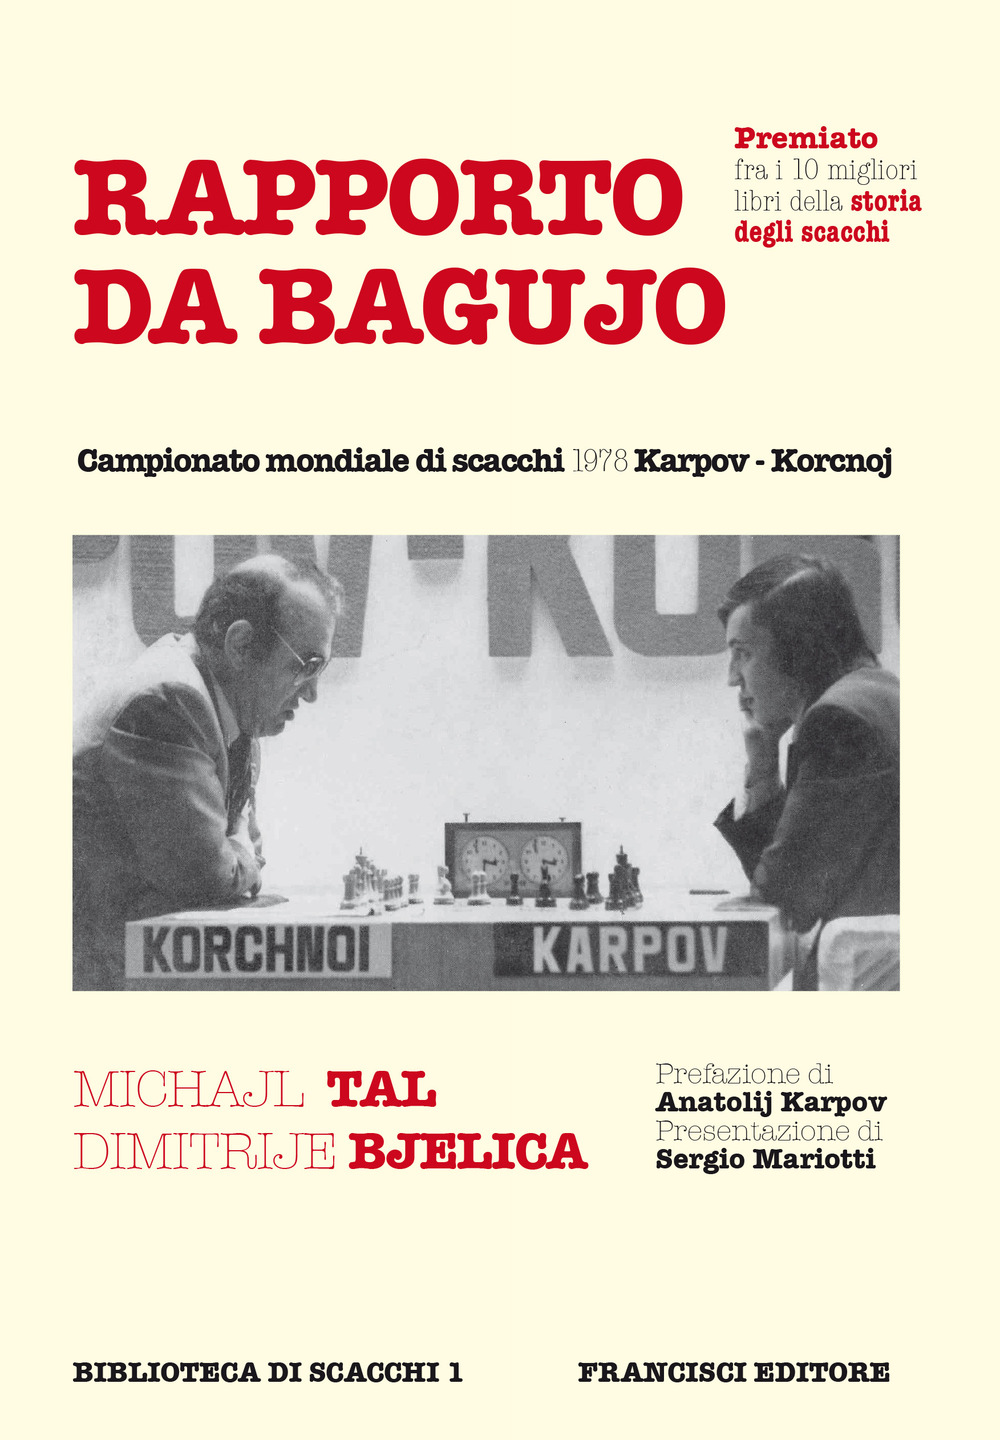 Rapporto da Bagujo. Campionato mondiale di scacchi 1978 Karpov-Korcnoj